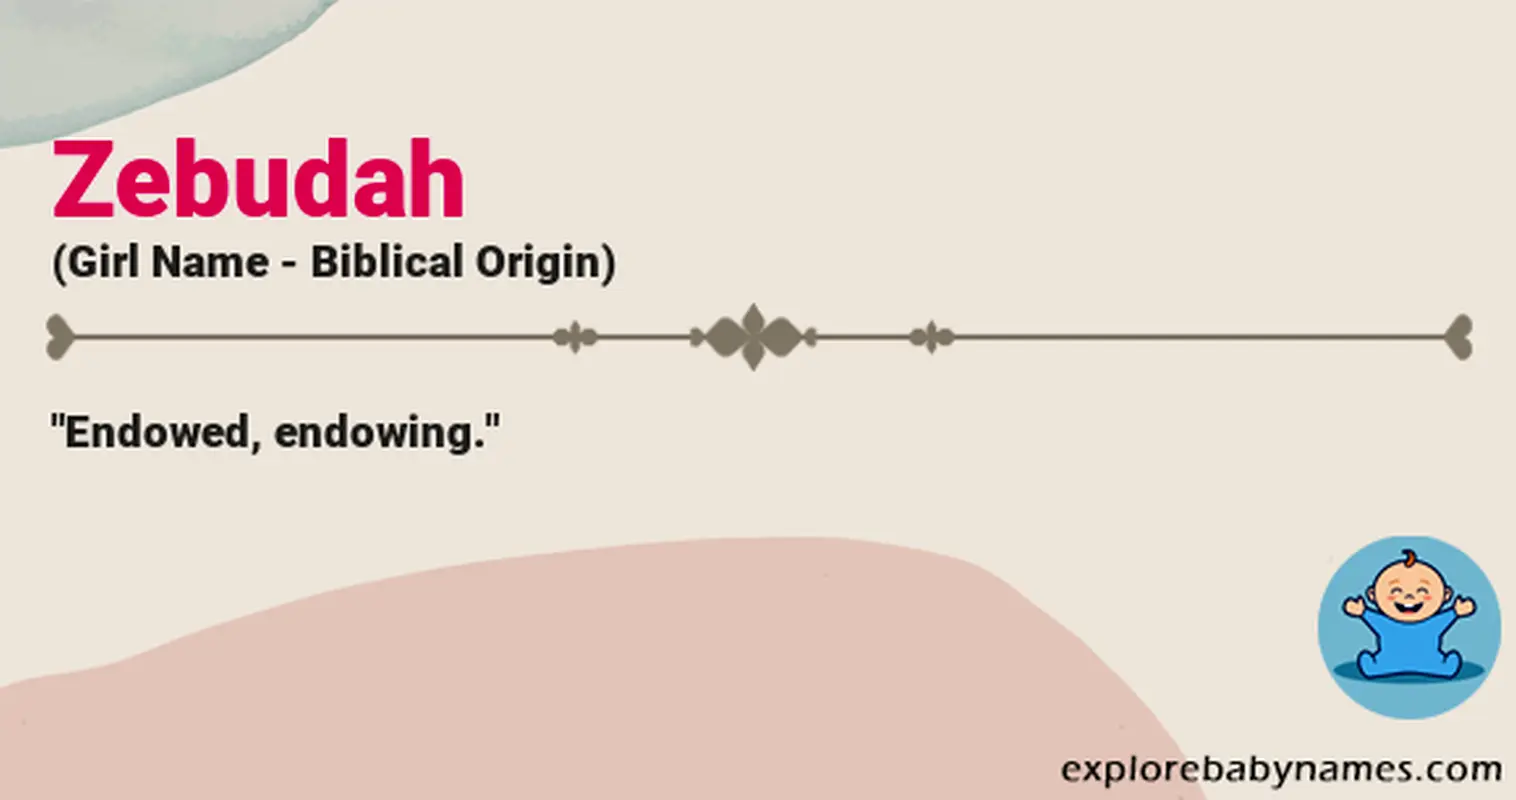 Meaning of Zebudah